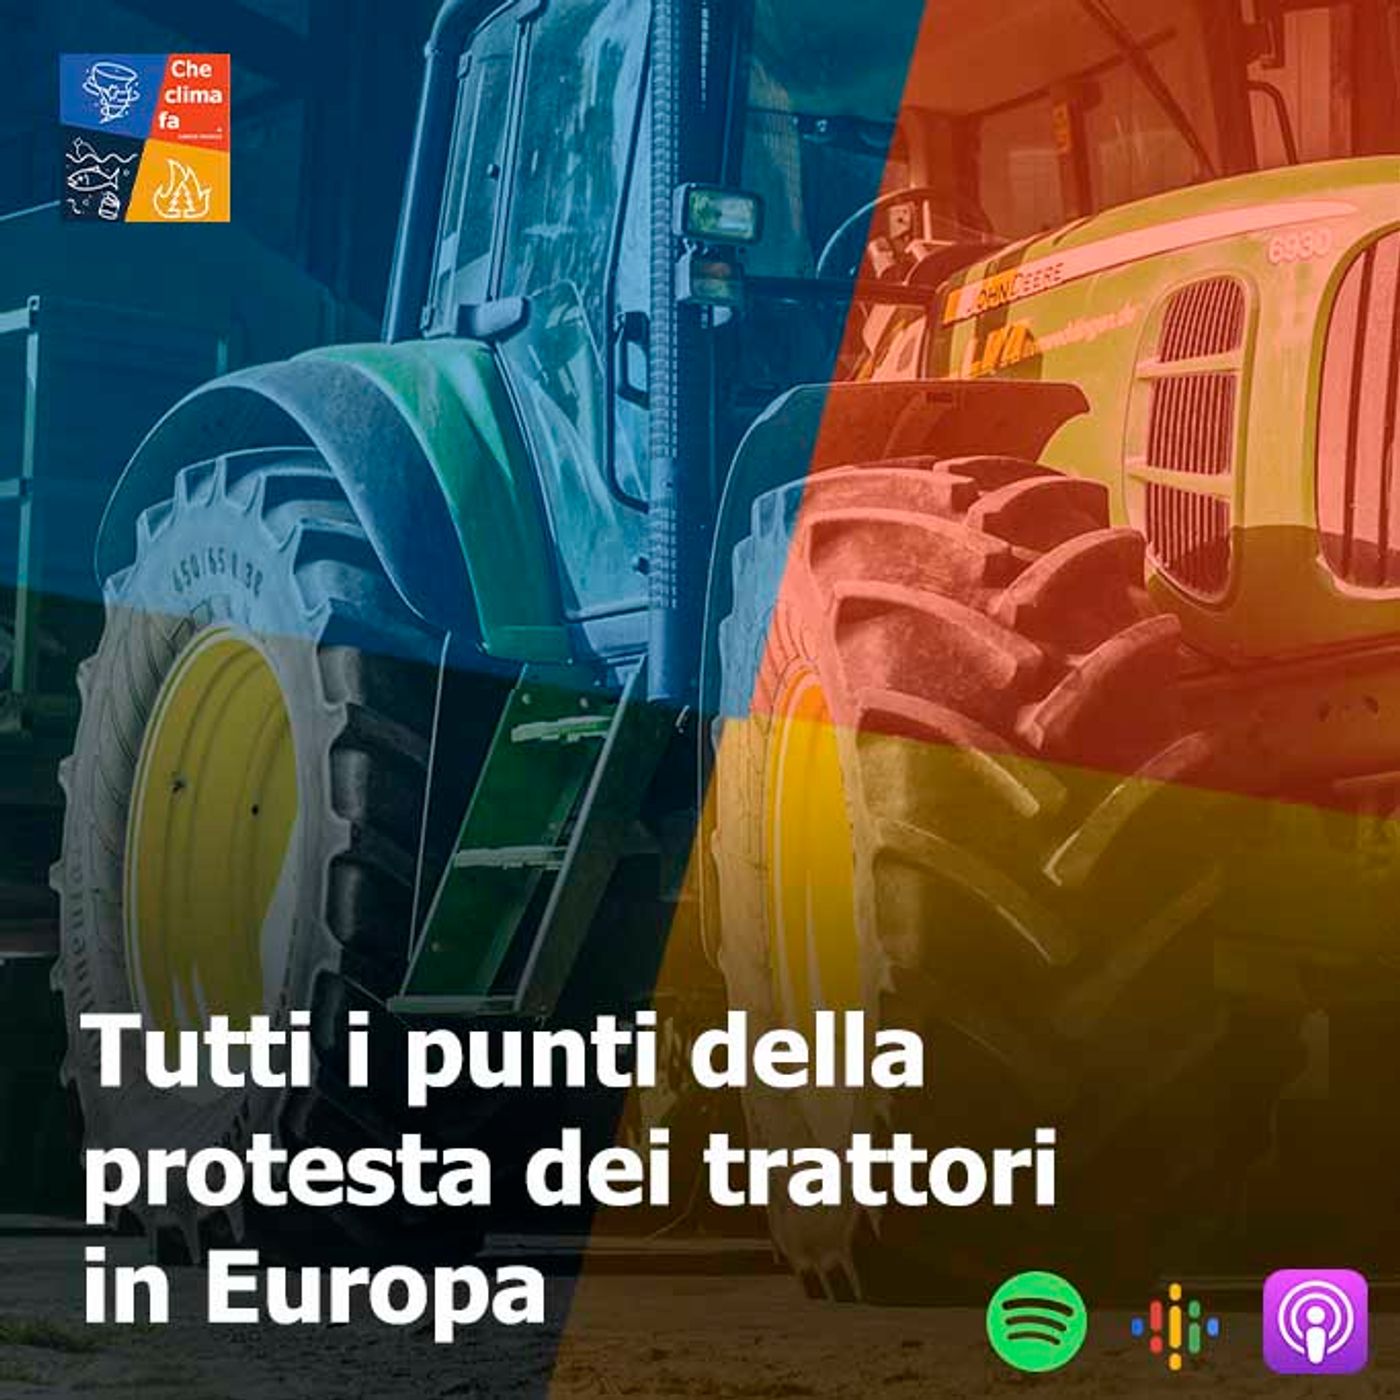 95 - Tutti i punti della protesta dei trattori in Europa